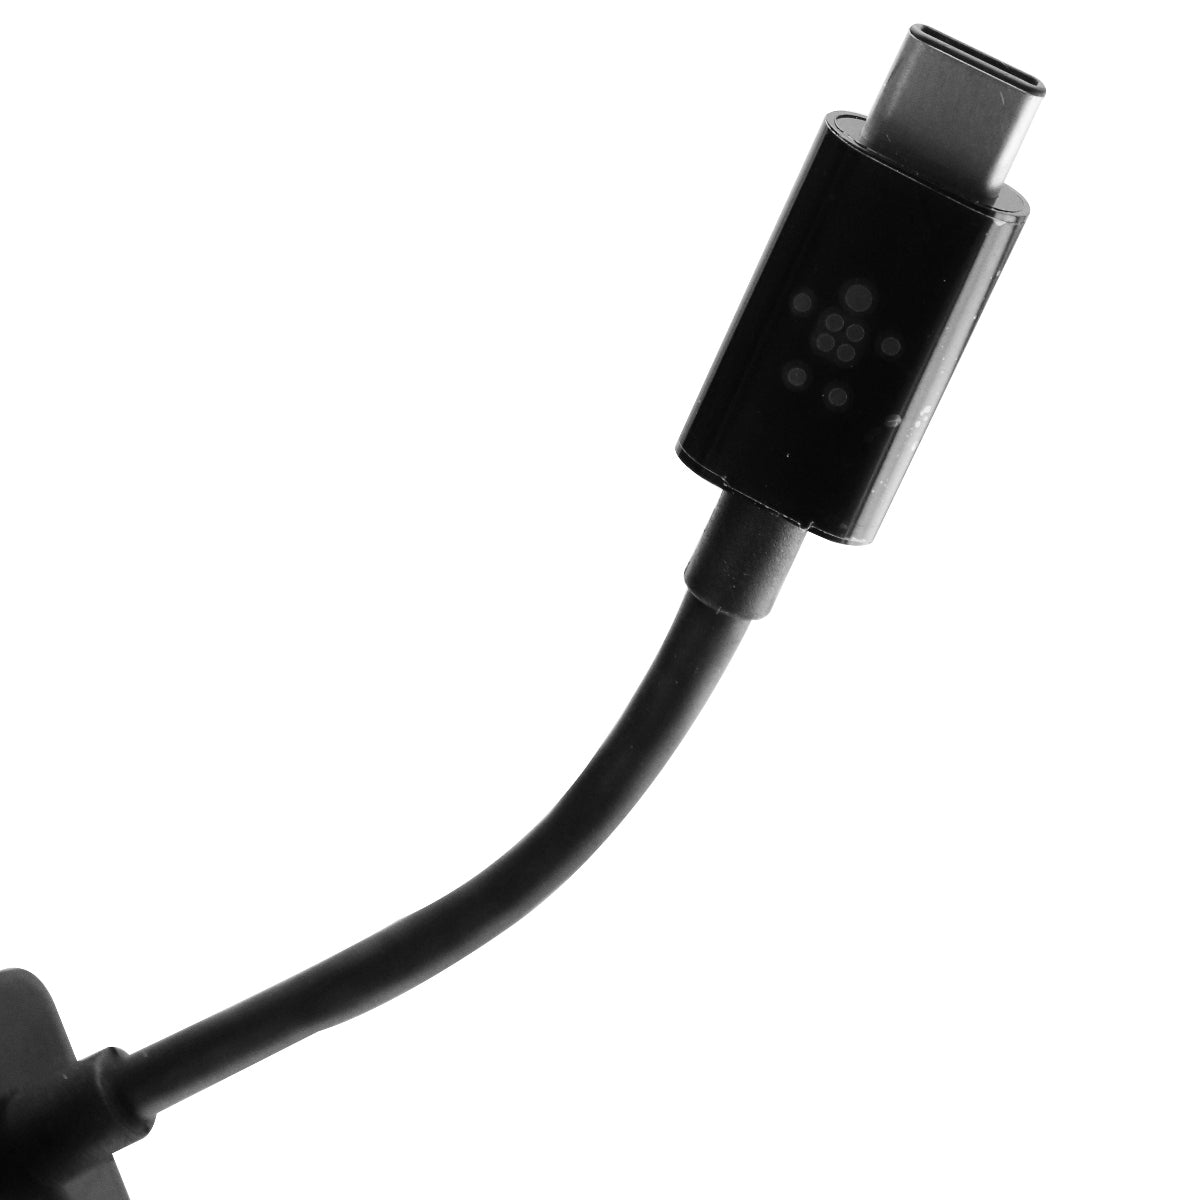 Belkin USB-C to Gigabit Ethernet Adapter - Black (F2CU040btBLK)